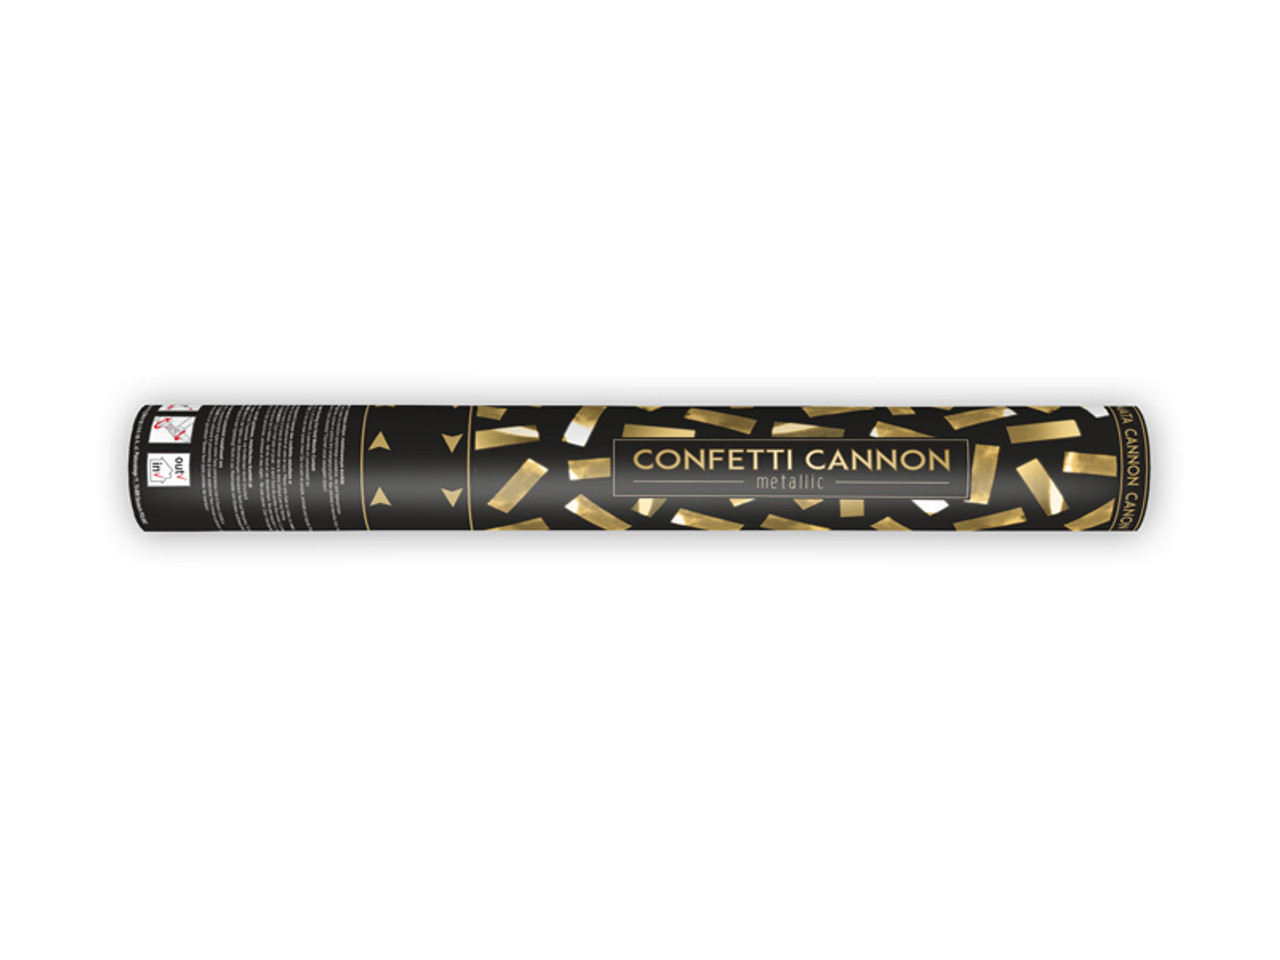 Canon a confettis or - Cdiscount